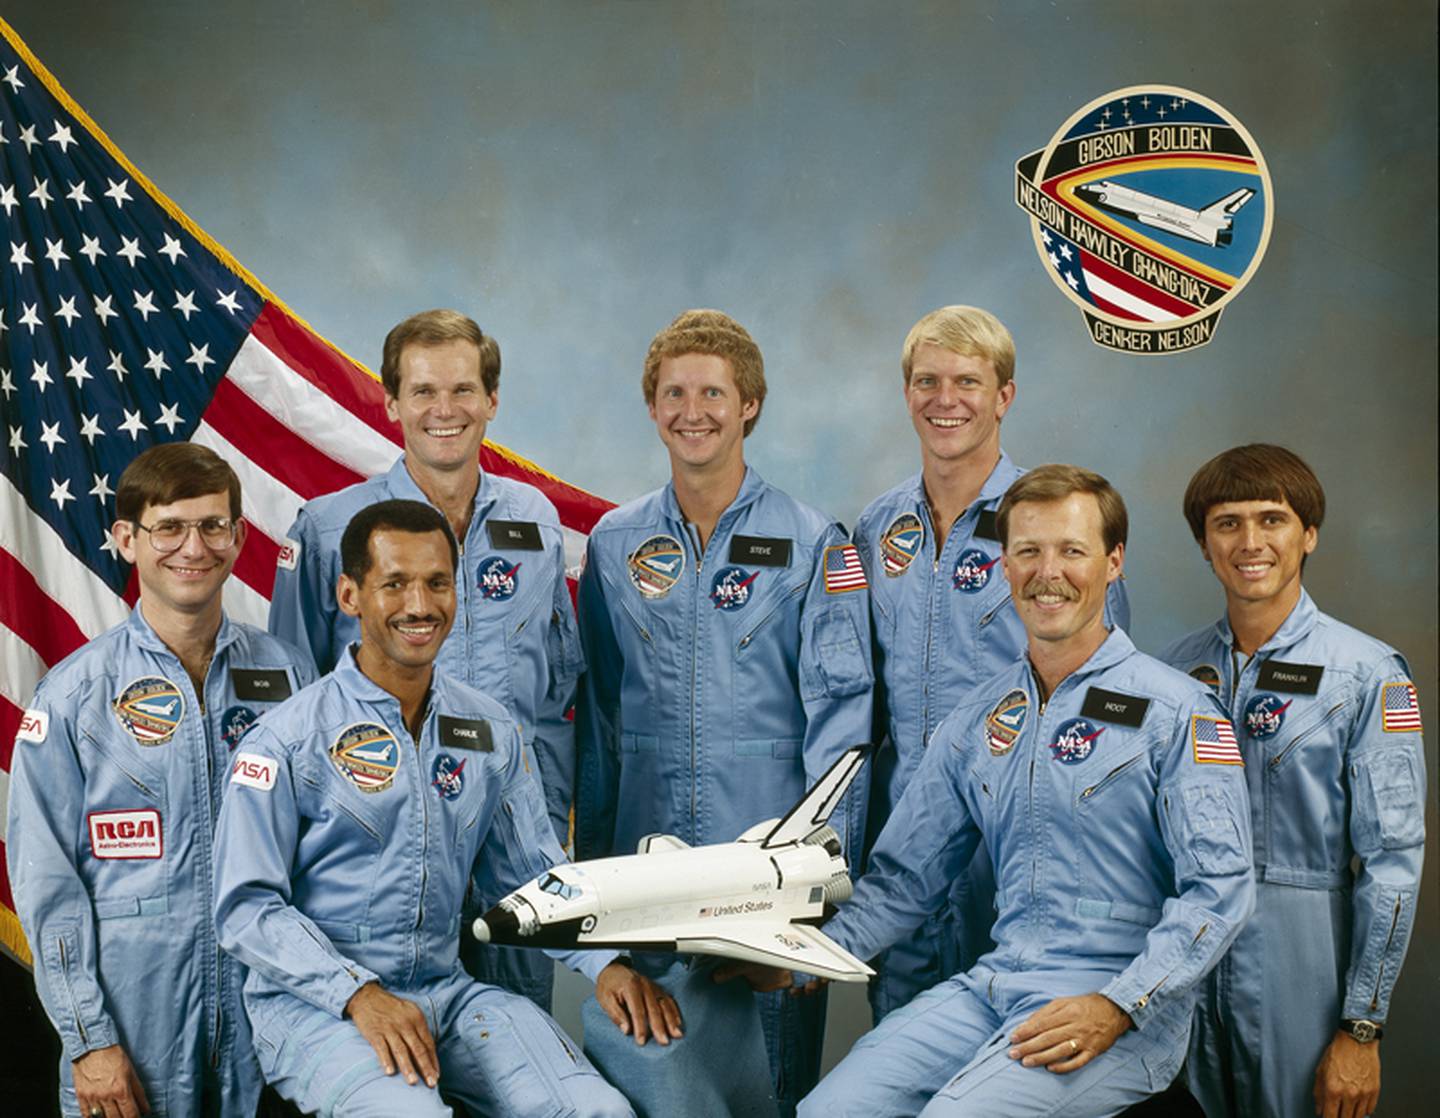 Retrato de la tripulación de la misión del transbordador espacial STS-61C de la NASA, Houston, Texas, 8 de diciembre de 1985. En la foto, sentados en el centro, desde la izquierda, el piloto Charles F Bolden Jr y el comandante Robert L Gibson; y de pie, desde la izquierda, los especialistas en carga útil Robert J. Cenker y (futuro senador estadounidense) Bill Nelson, y los especialistas en misión Steven A Hawley, George D Nelson y Franklin R Chang Diaz. (Foto de NASA vía CNP/Getty Images)